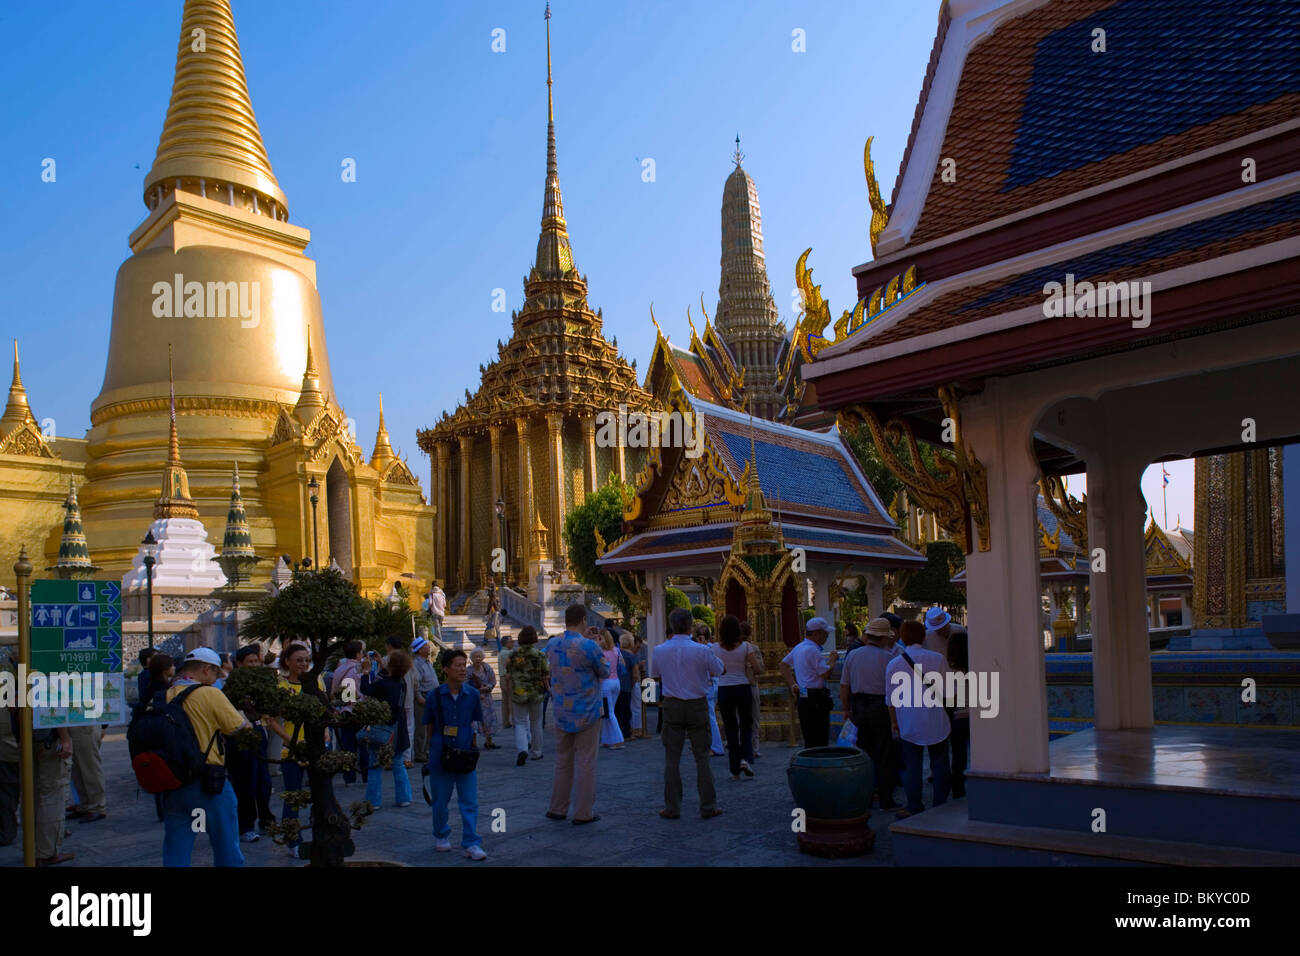 Grupo de turistas visitando el templo de Wat Phra Kaew, el templo budista más importante de Tailandia, Phra Sri Rattana Chedi Phra y Mo Foto de stock